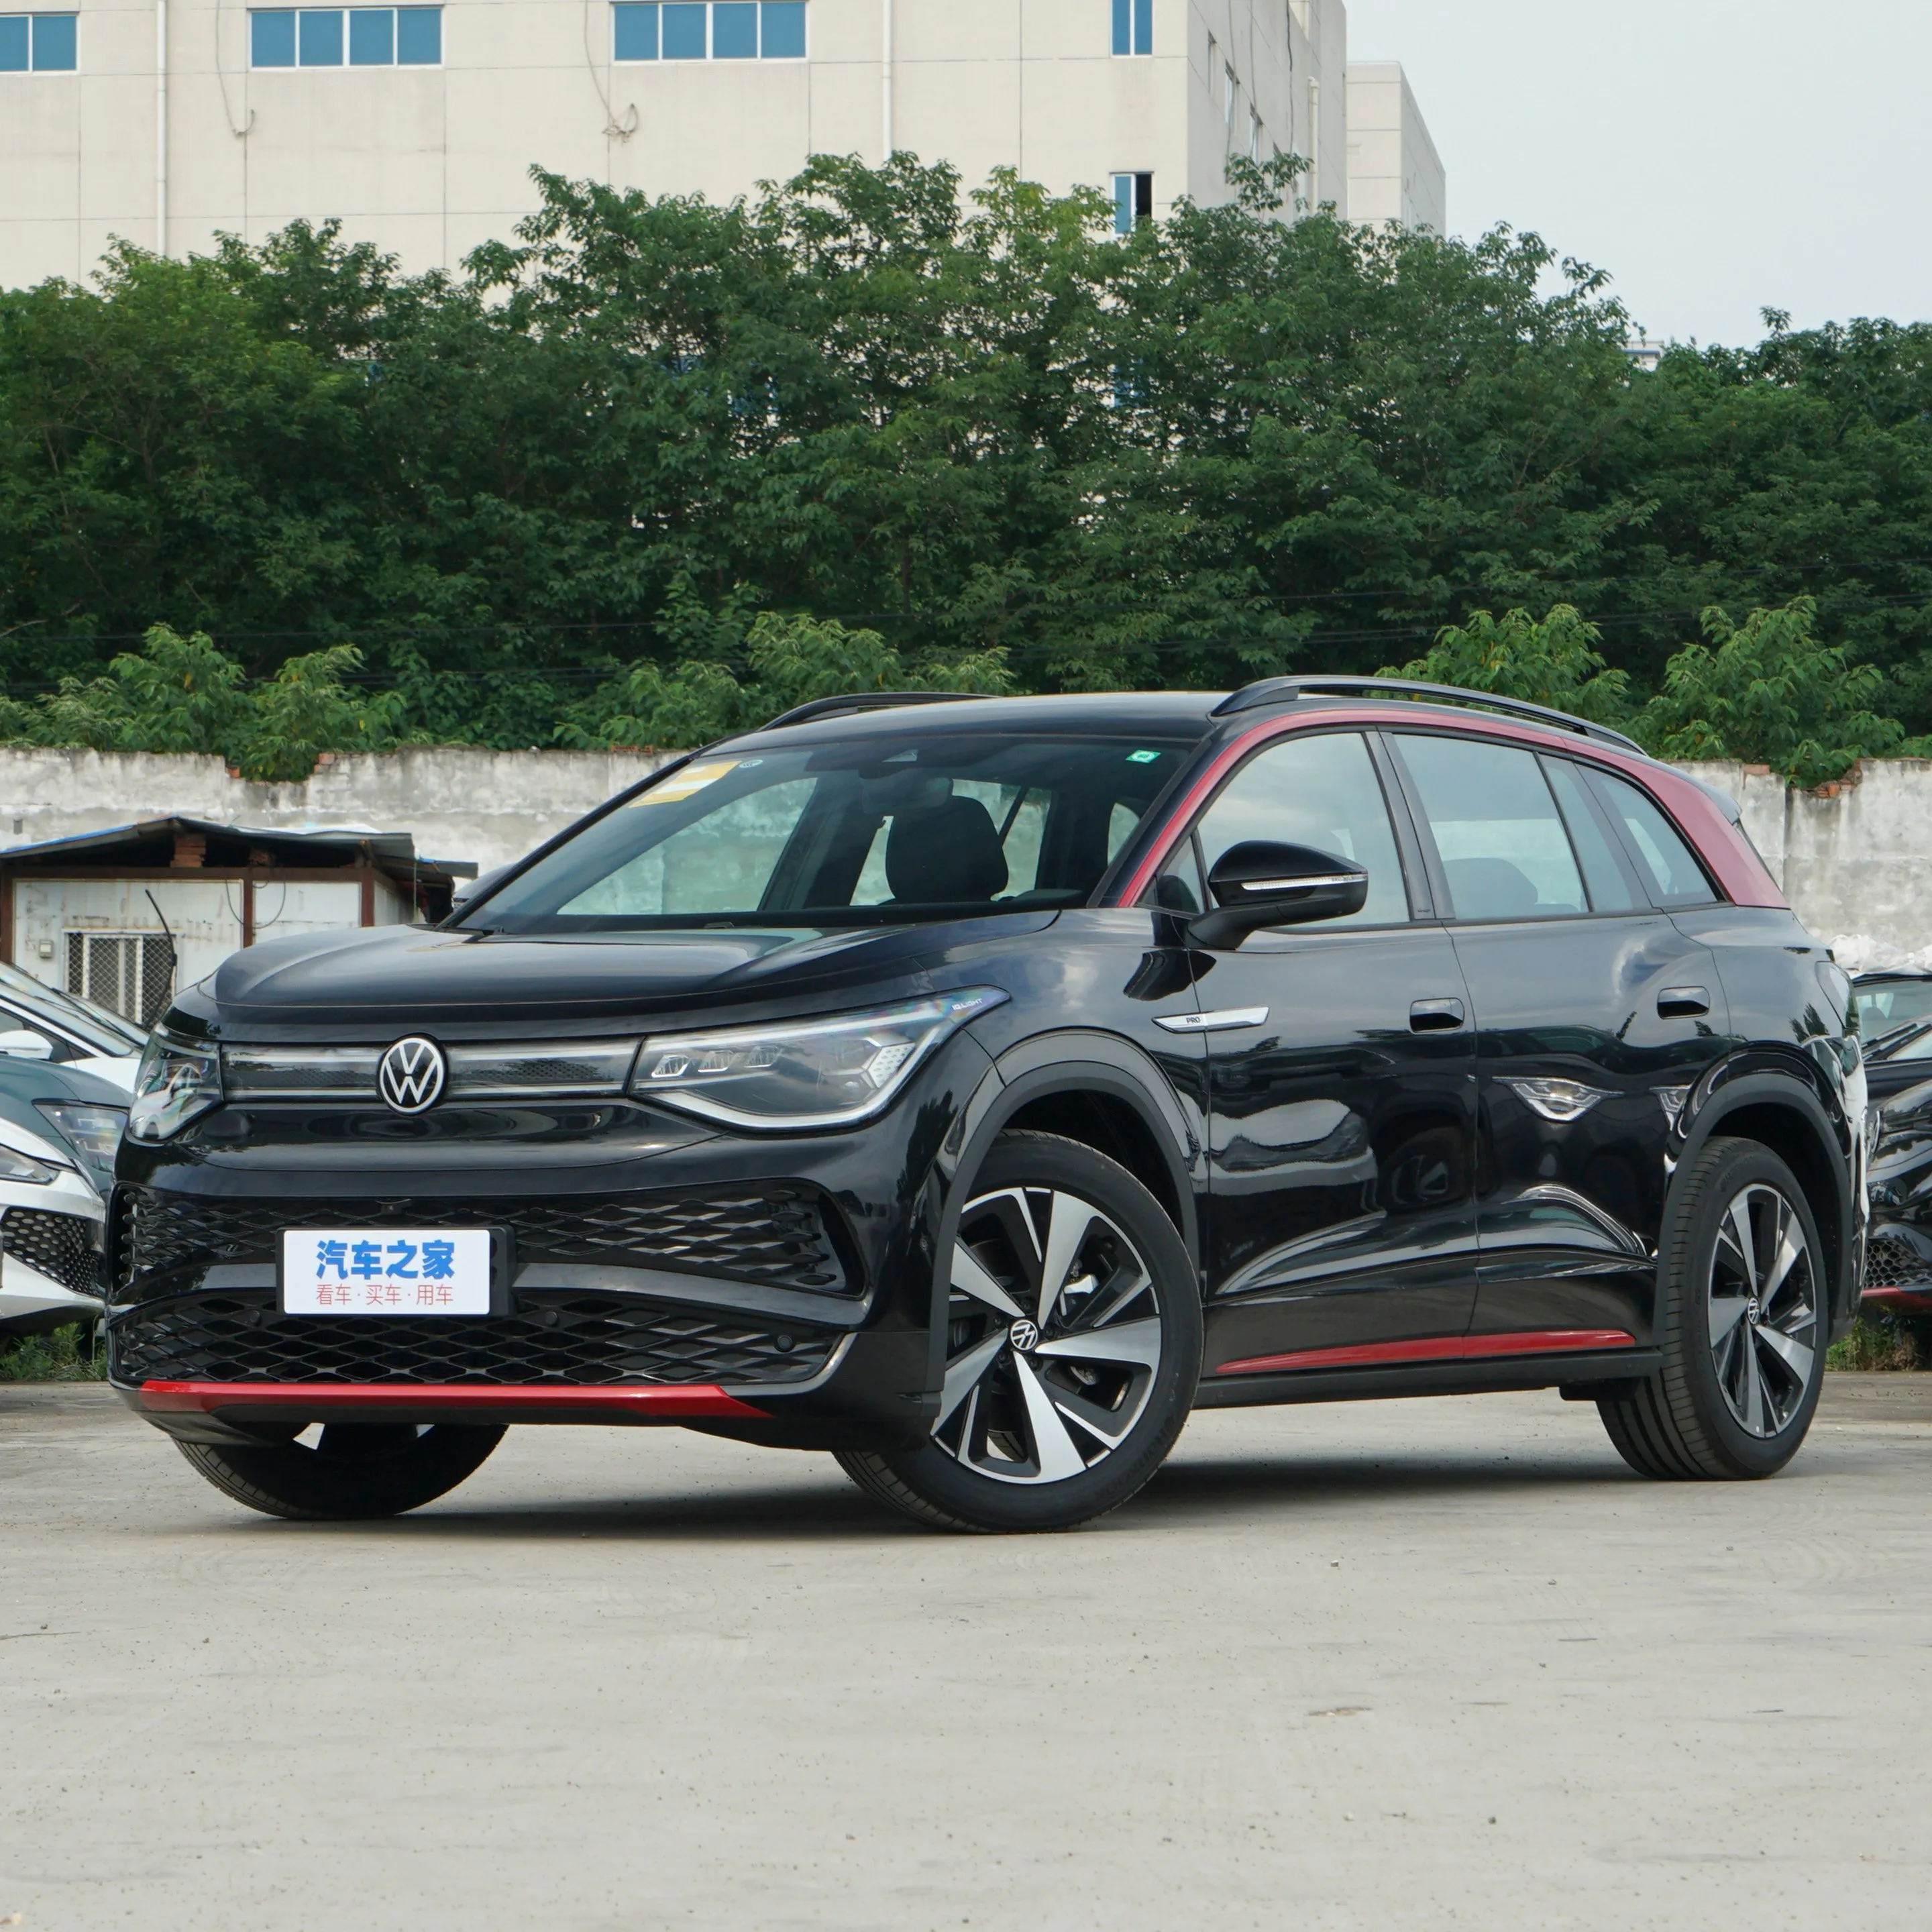 2023 Vw Id6x Smart Pure versión de largo alcance de los vehículos de nueva energía más vendidos del mundo Ev Car coche eléctrico chino más barato